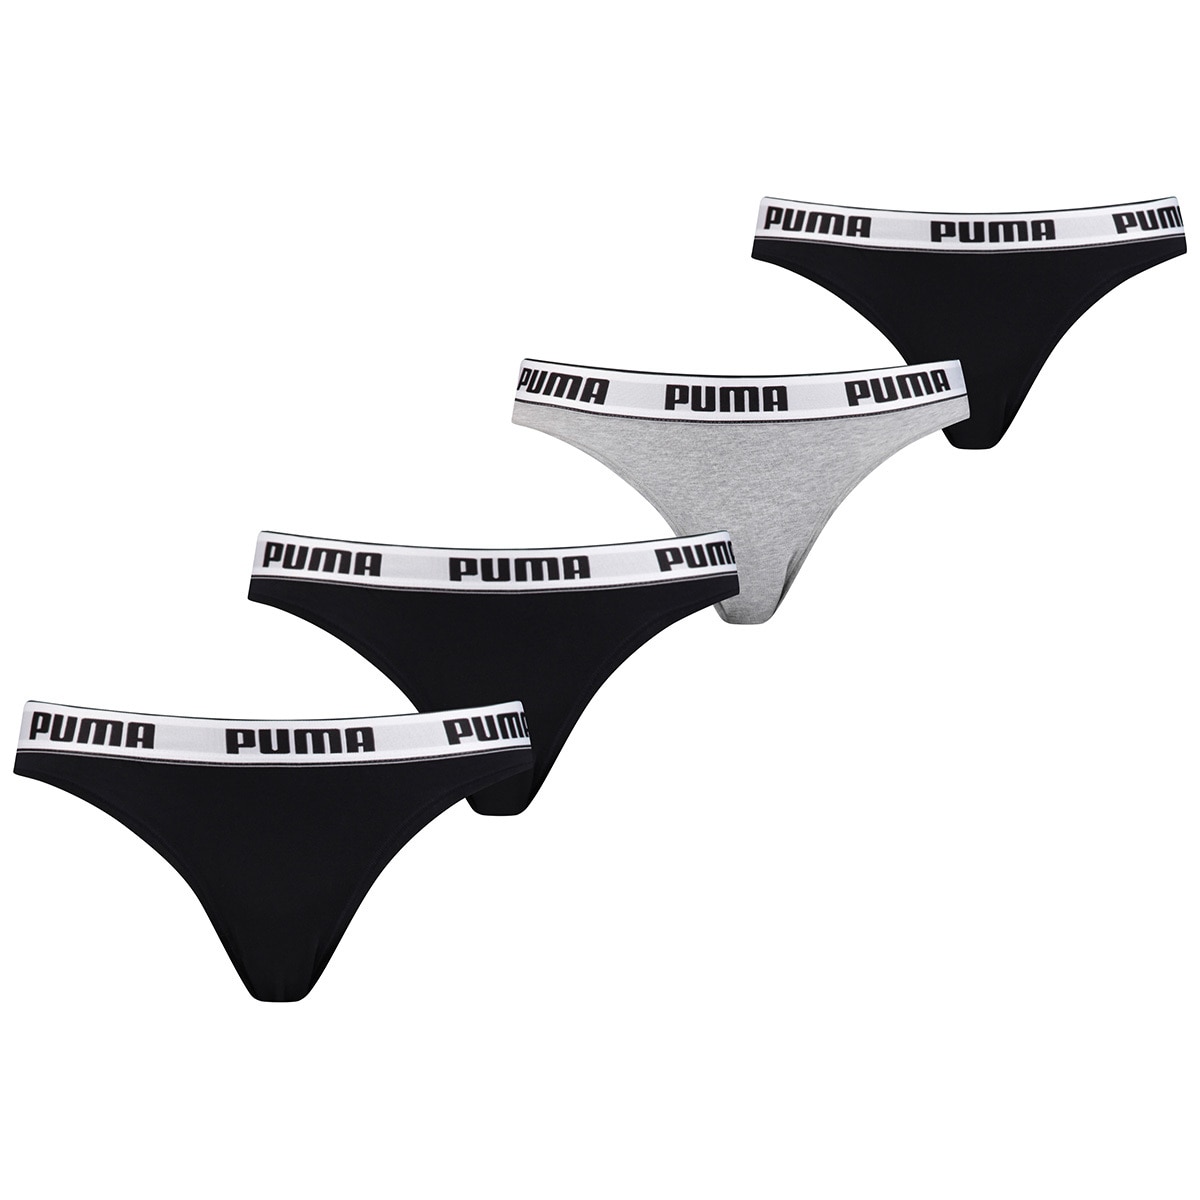 puma women's underwear